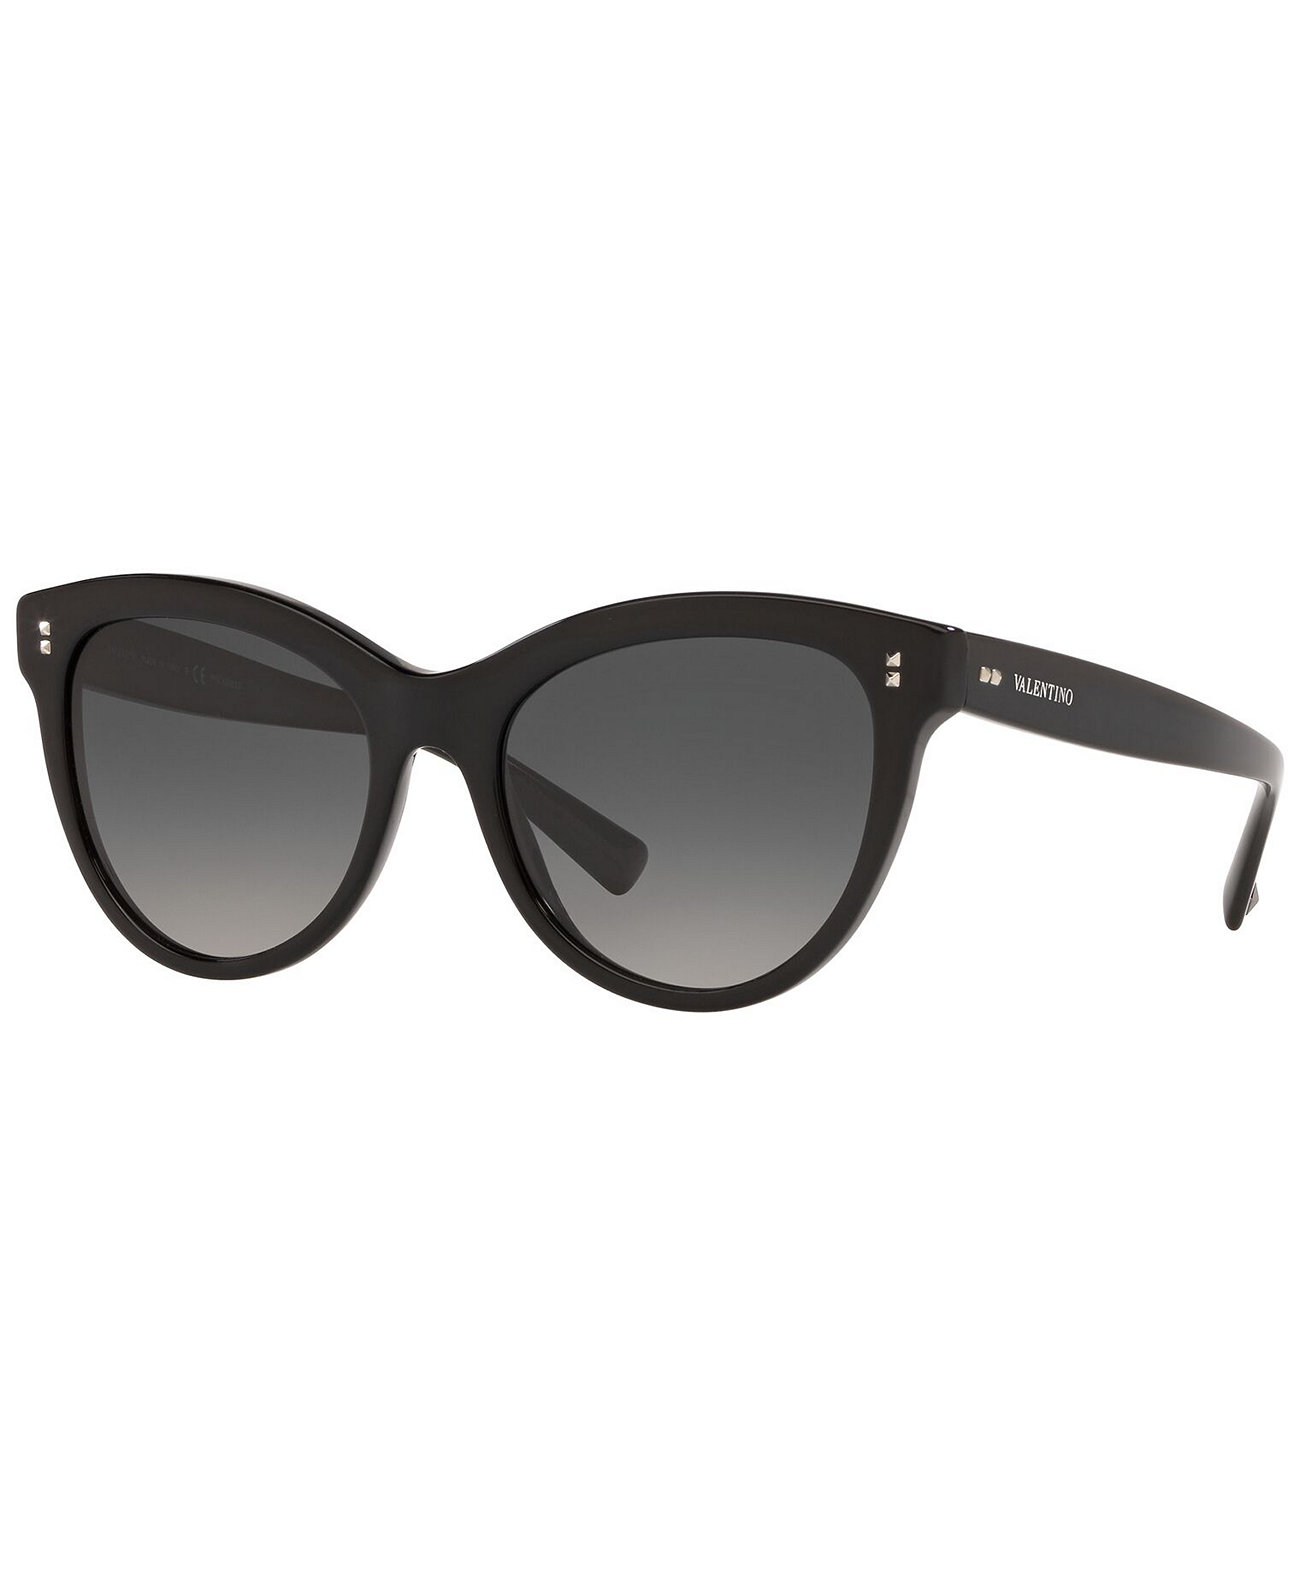 Поляризованные солнцезащитные очки, VA4013 54 Valentino